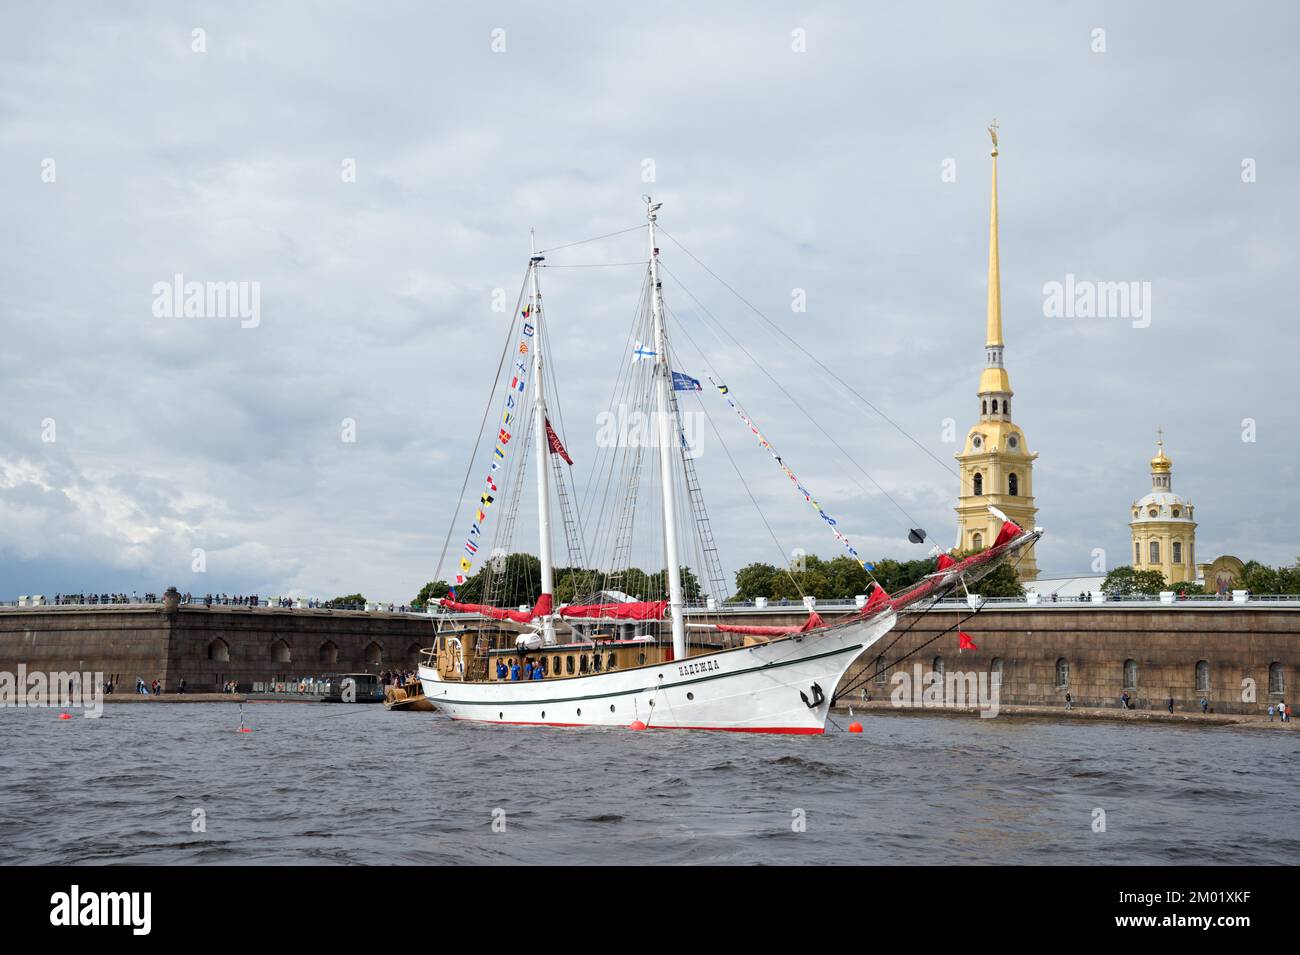 Schooner 'Nadezhda' (Hope) in Neva river during Baltic Yacht Week 2019 in St. Petersburg, Russia Stock Photo